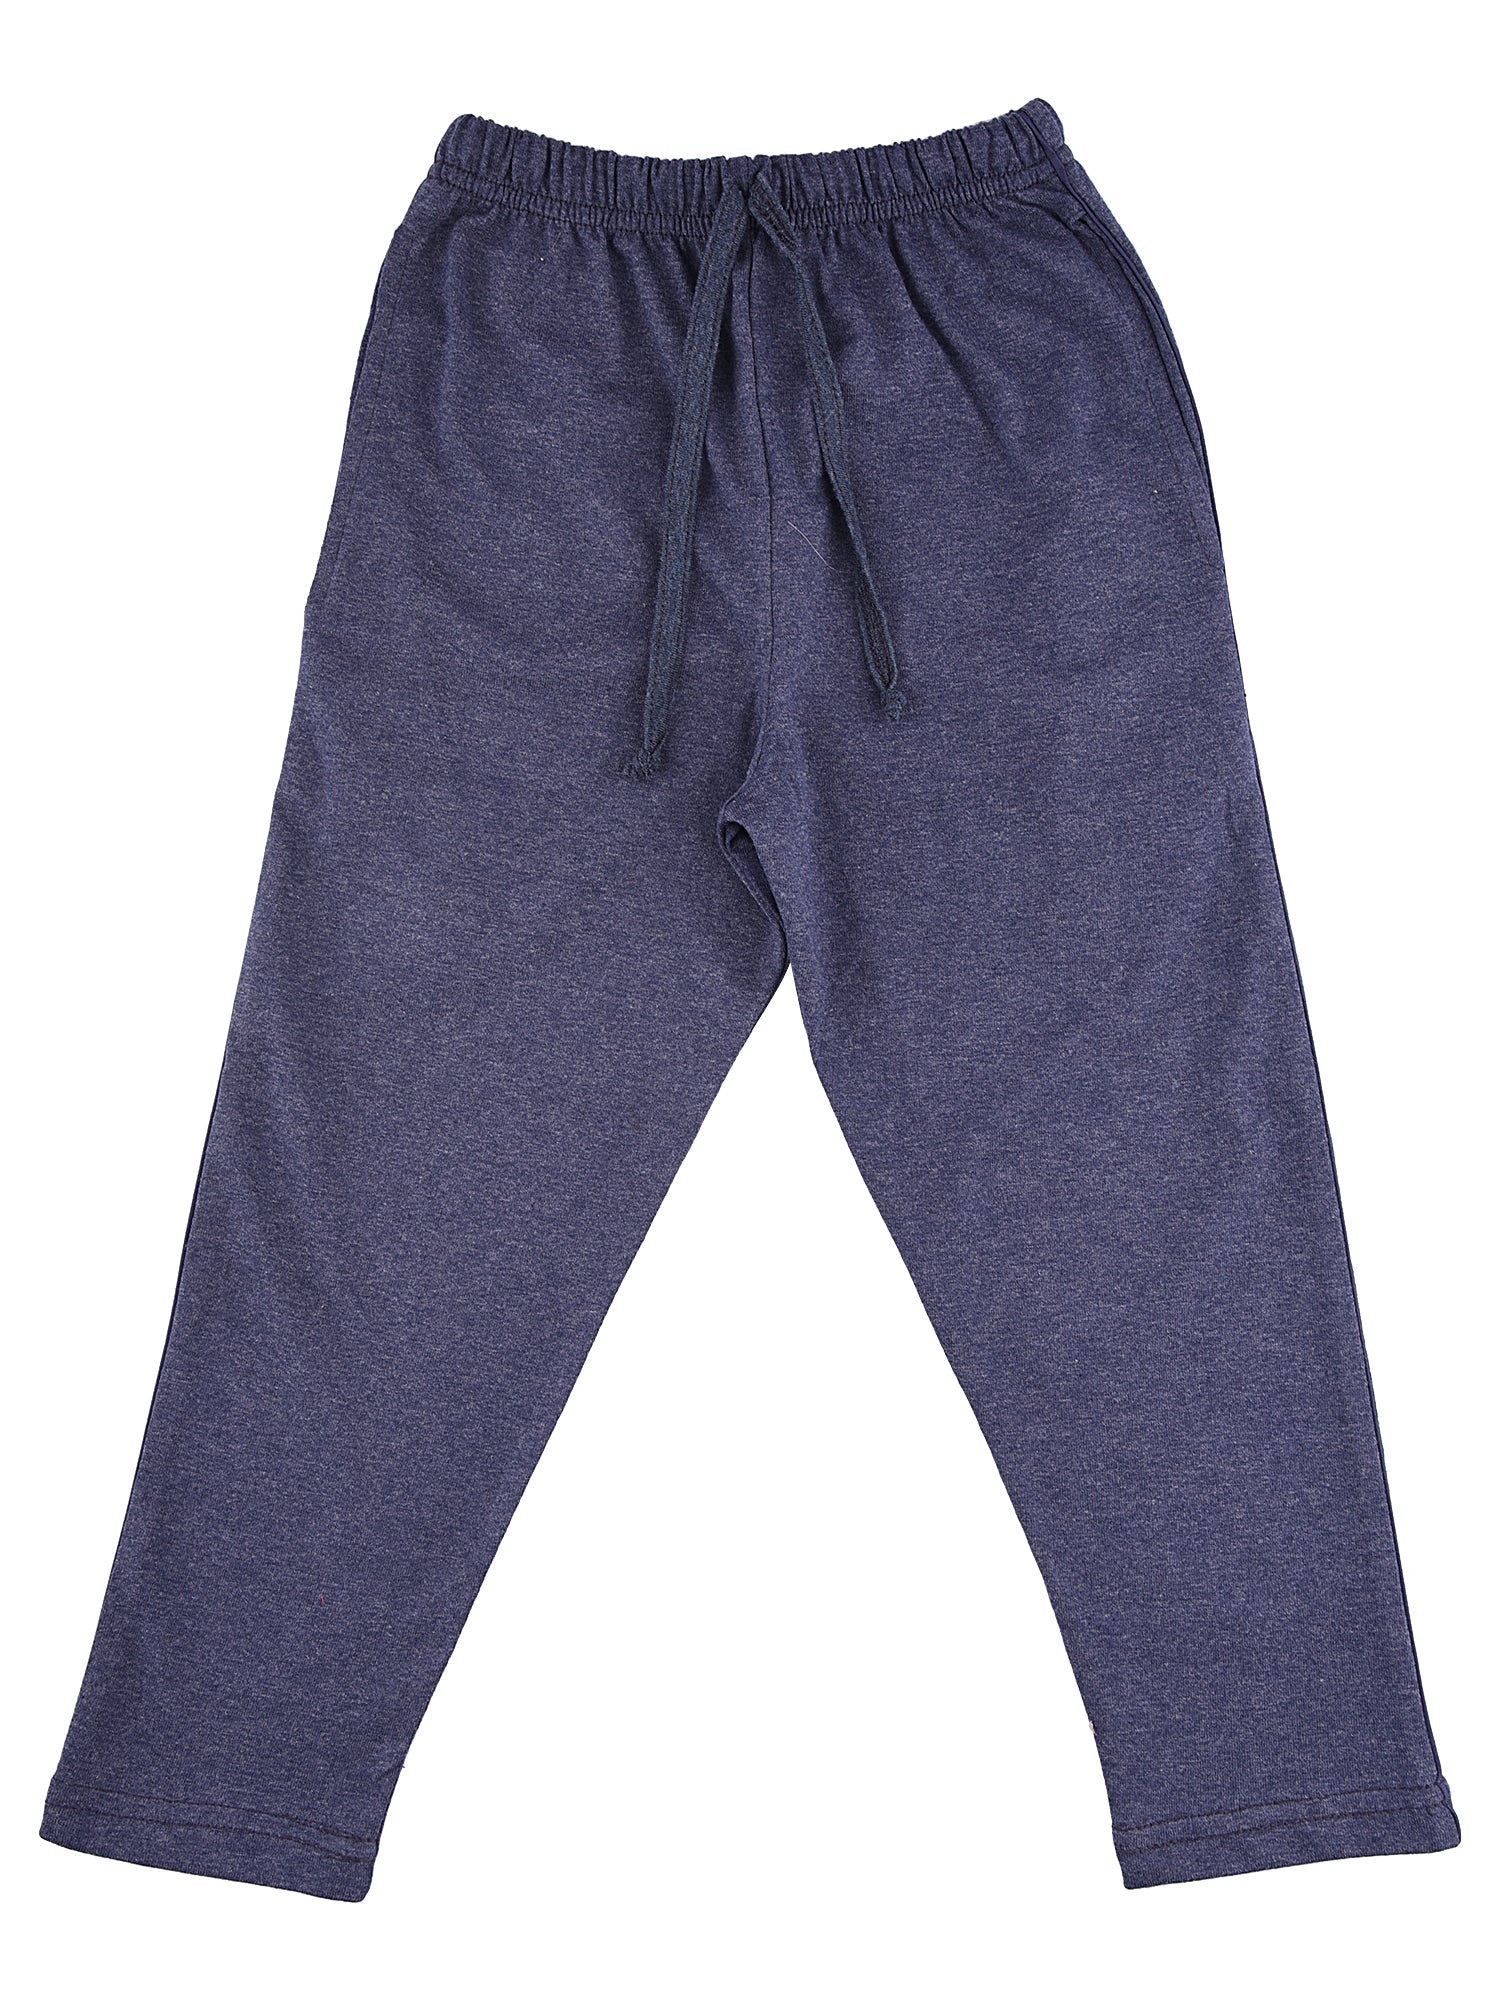 Buy Black Low Rise Cotton Pants for Boys Online at JackJones Junior  132812401